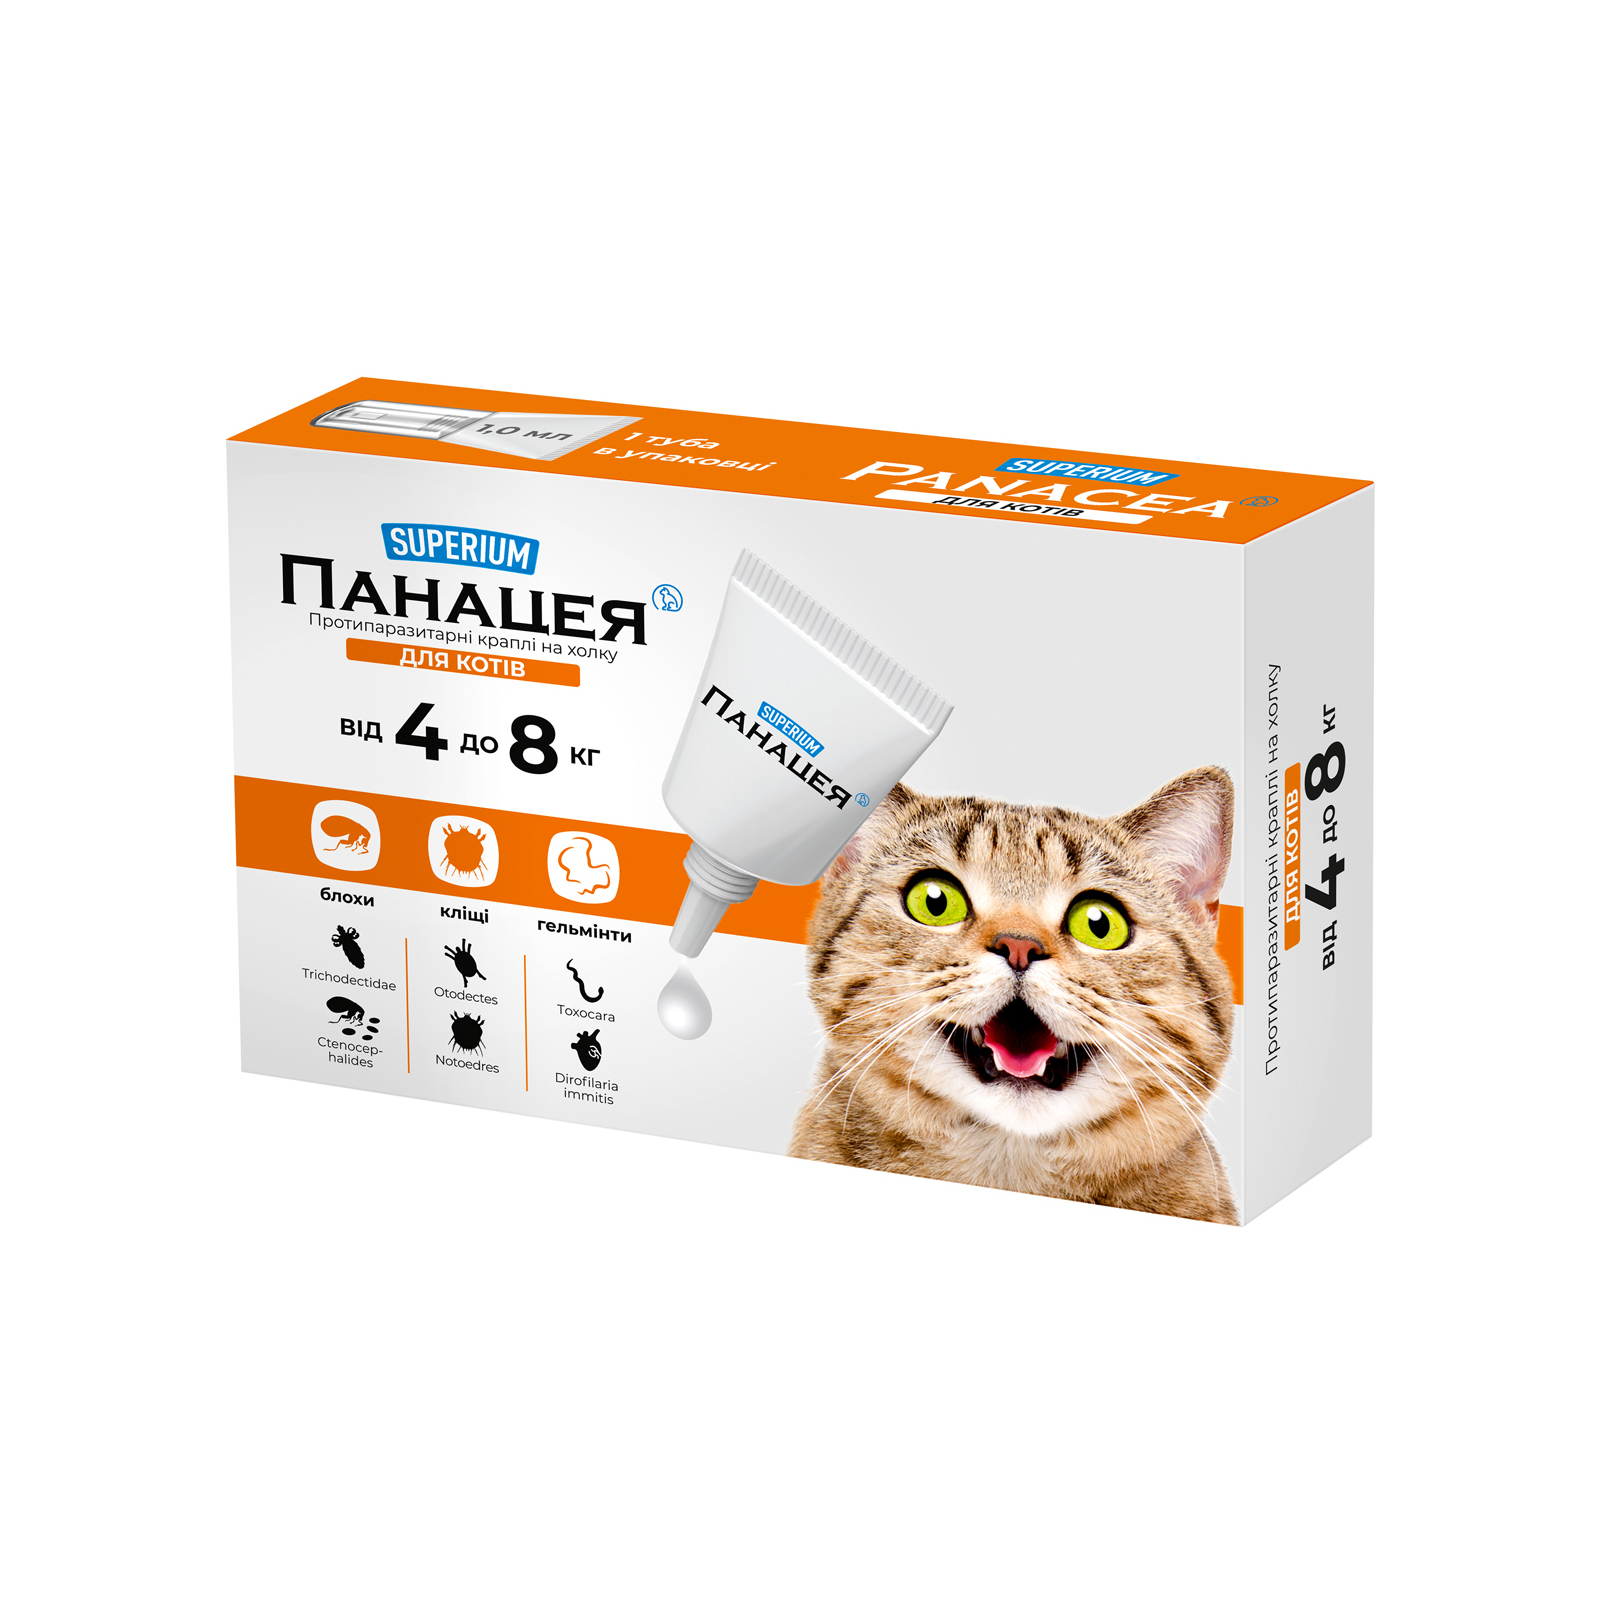 Капли для животных SUPERIUM Panacea Противпаразитарные для кошек от 4 до 8 кг (9135)